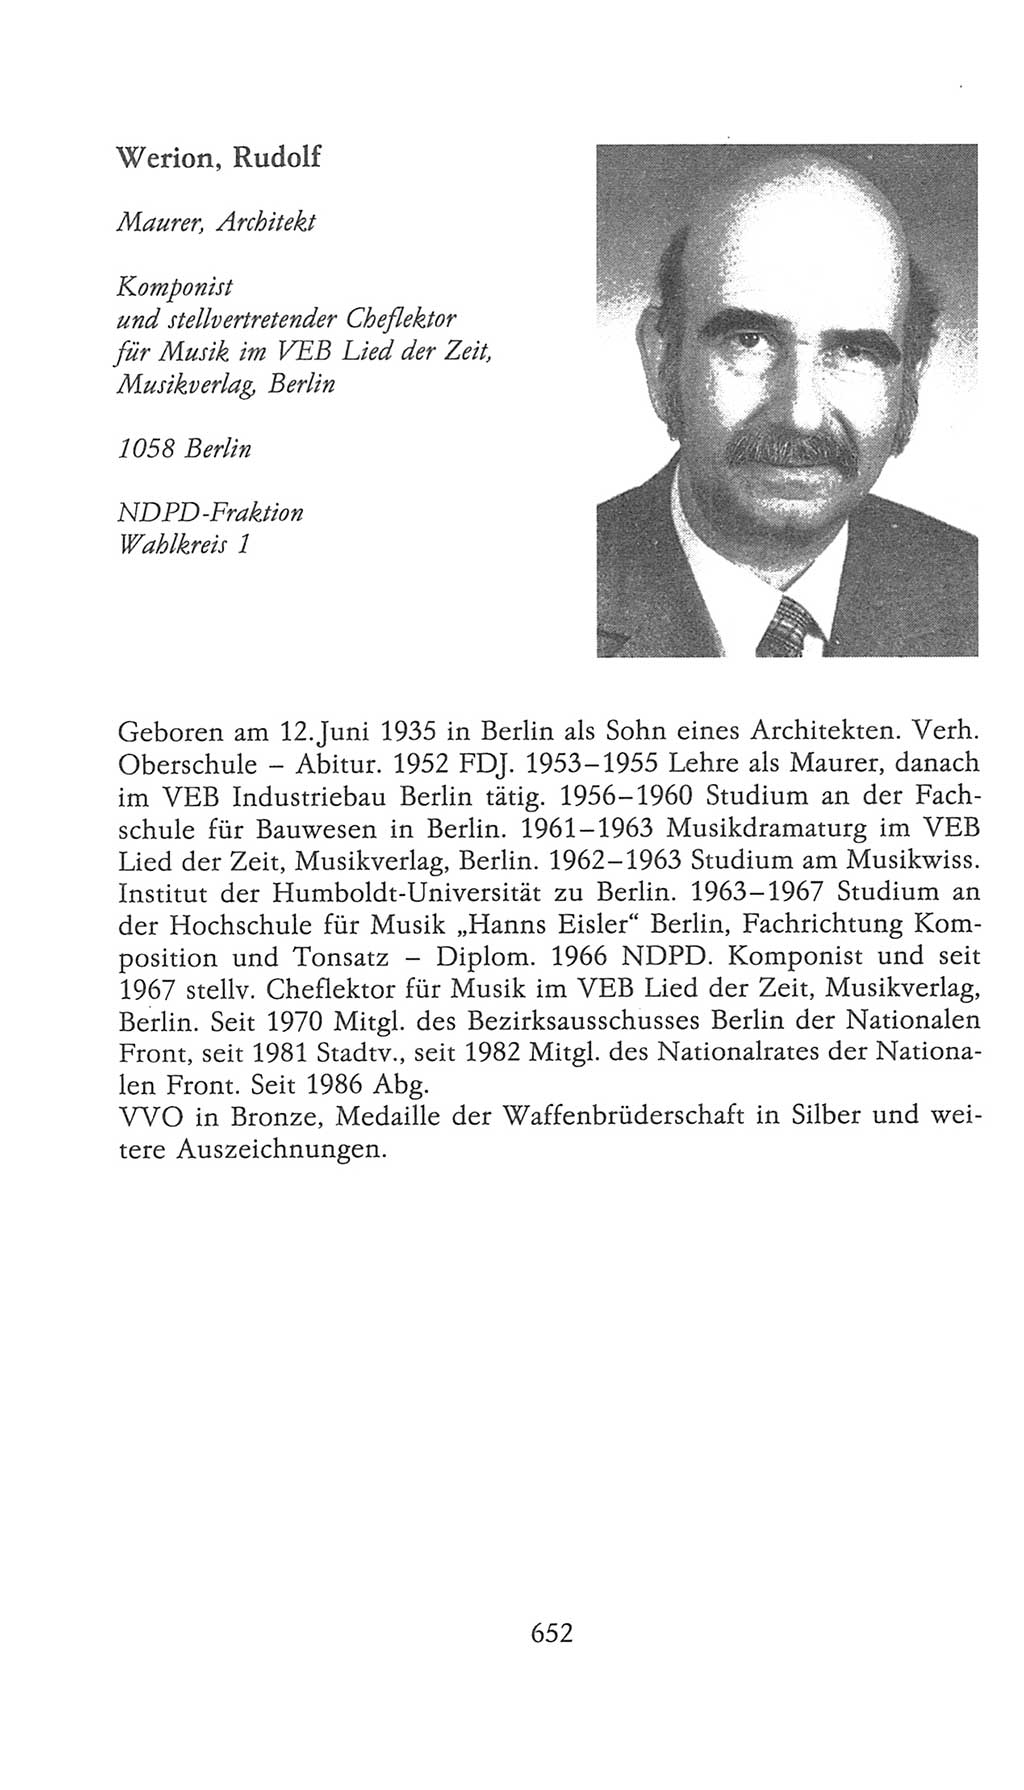 Volkskammer (VK) der Deutschen Demokratischen Republik (DDR), 9. Wahlperiode 1986-1990, Seite 652 (VK. DDR 9. WP. 1986-1990, S. 652)